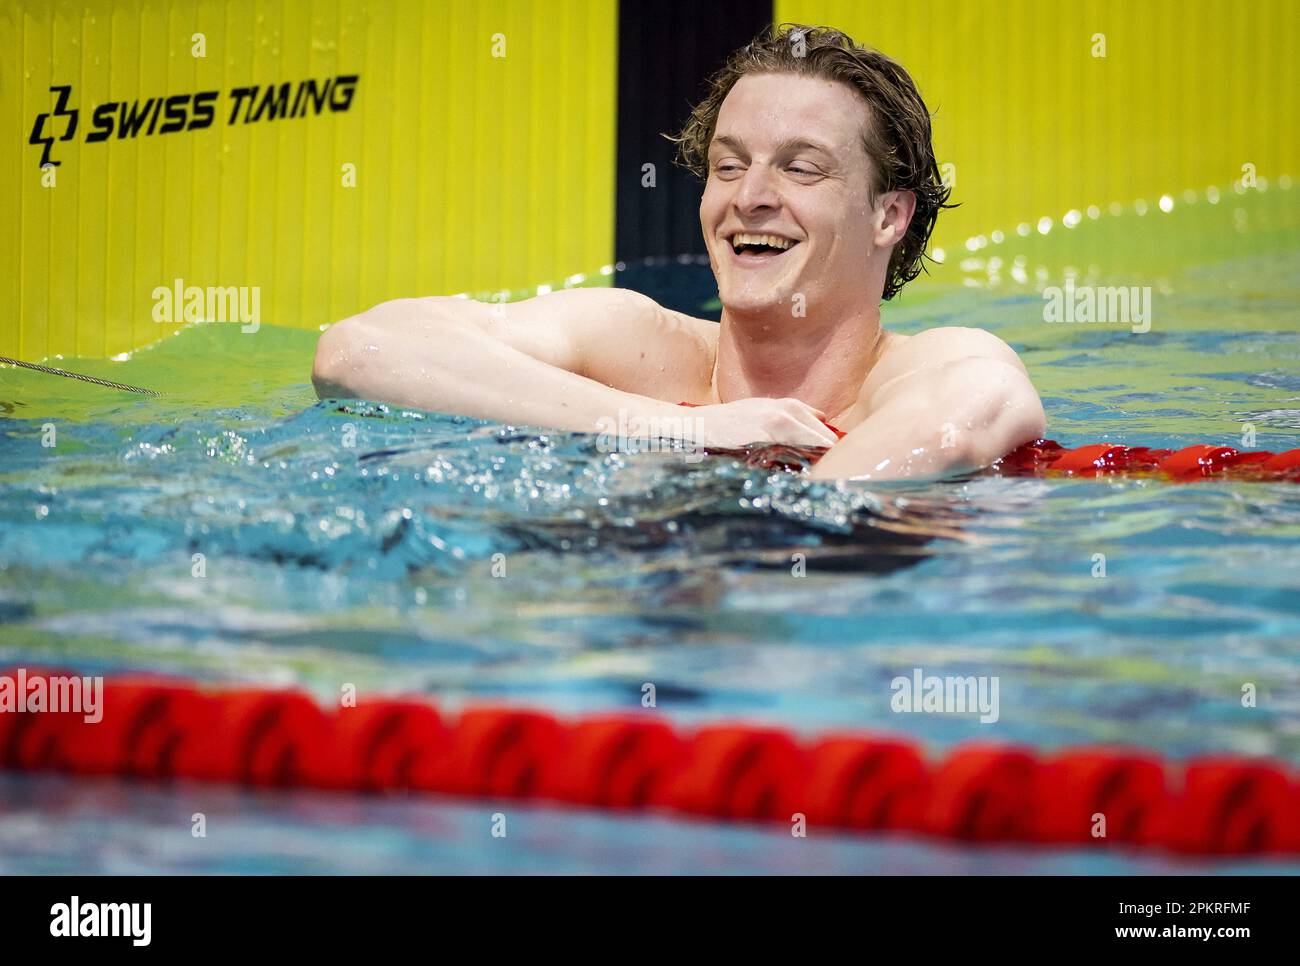 EINDHOVEN - Thom de Boer en acción en los 50 metros libres durante el último día del encuentro de clasificación de Eindhoven. Los mejores nadadores holandeses pueden nadar límites aquí para las próximas Copas del Mundo y los Juegos Olímpicos en 2024. ANP KOEN VAN WEEL Foto de stock